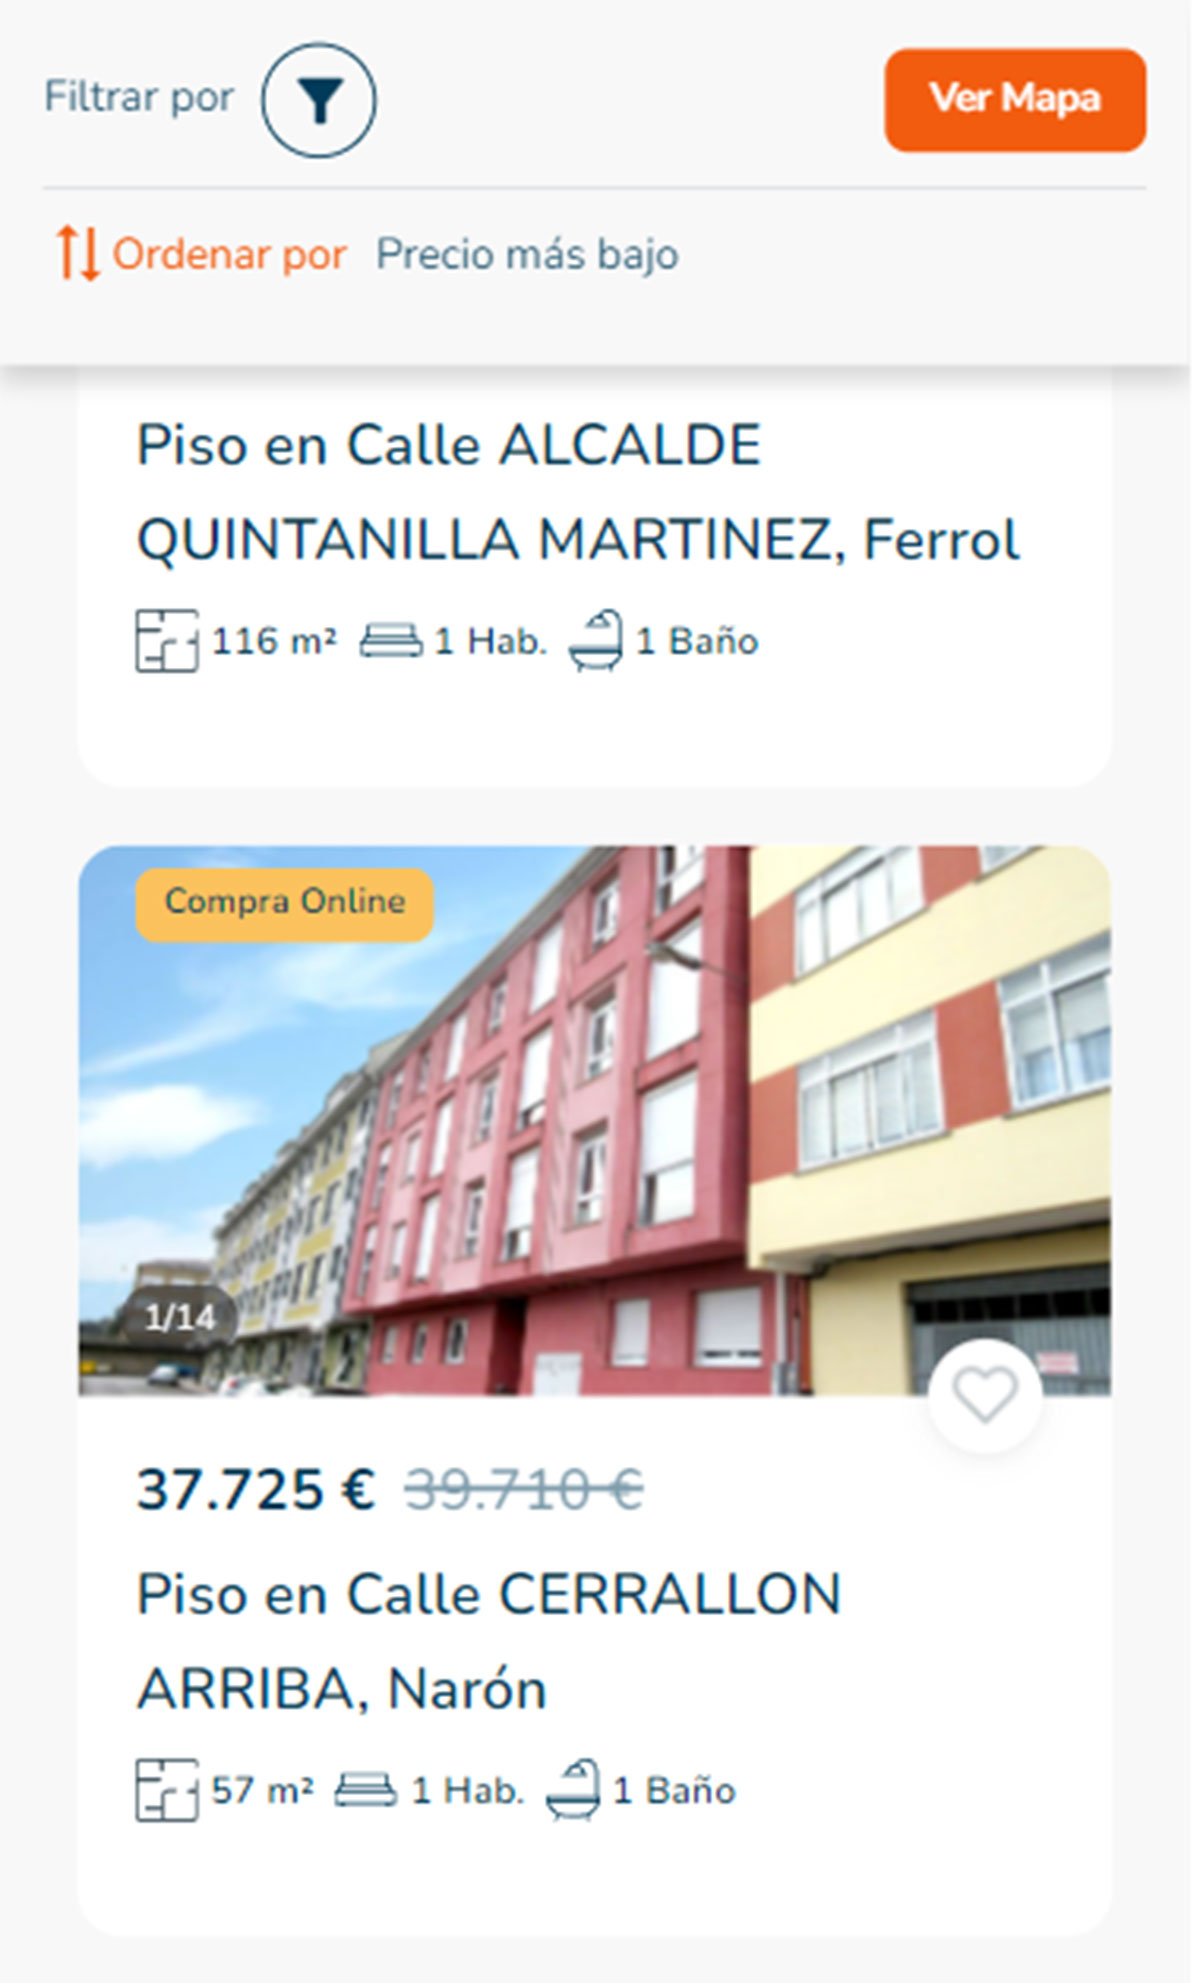 Piso a la venta en A Coruña por 37.200 euros